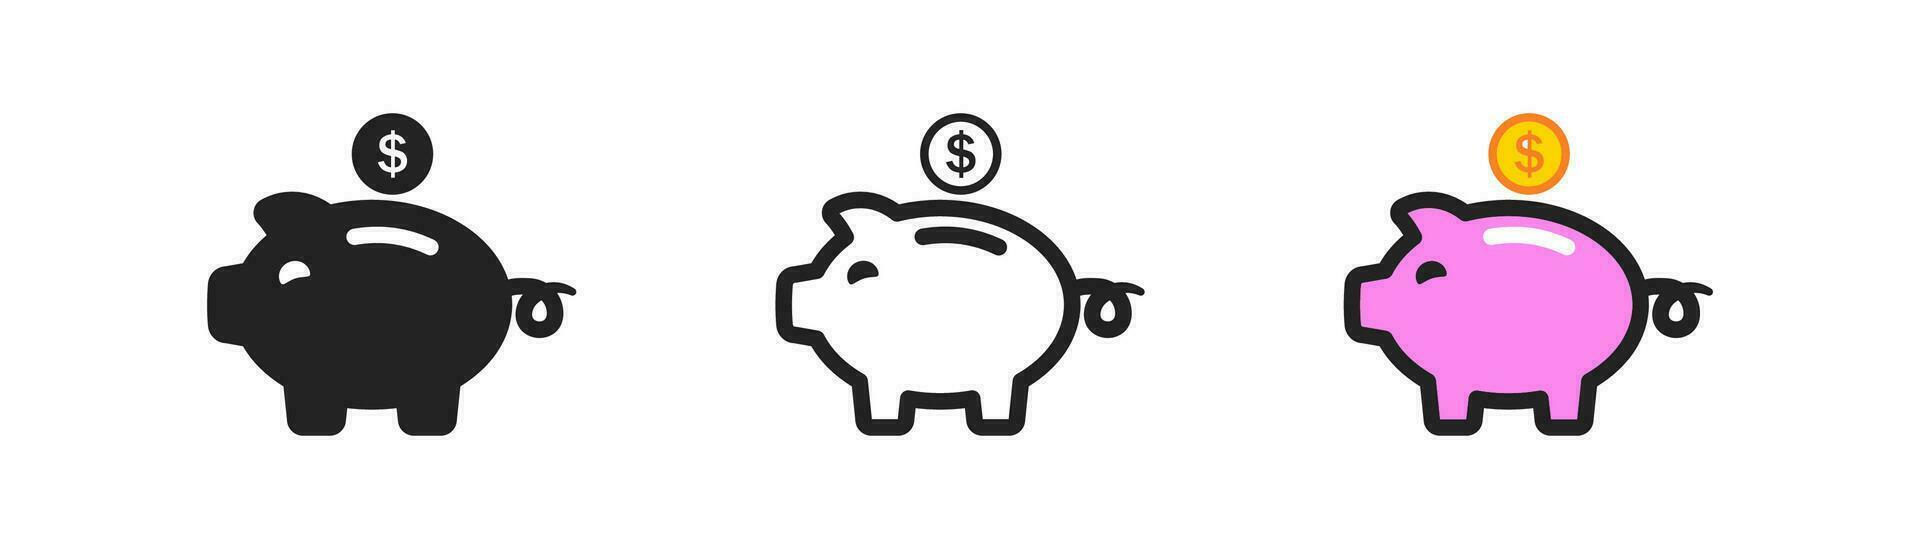 Rosa Schweinchen Bank Symbol auf Weiß Hintergrund. Sparschwein im eben Stil. Investition Konzept. speichern Geld, Inflation, global Wirtschaft Krise, Geschäft, Symbol. vektor